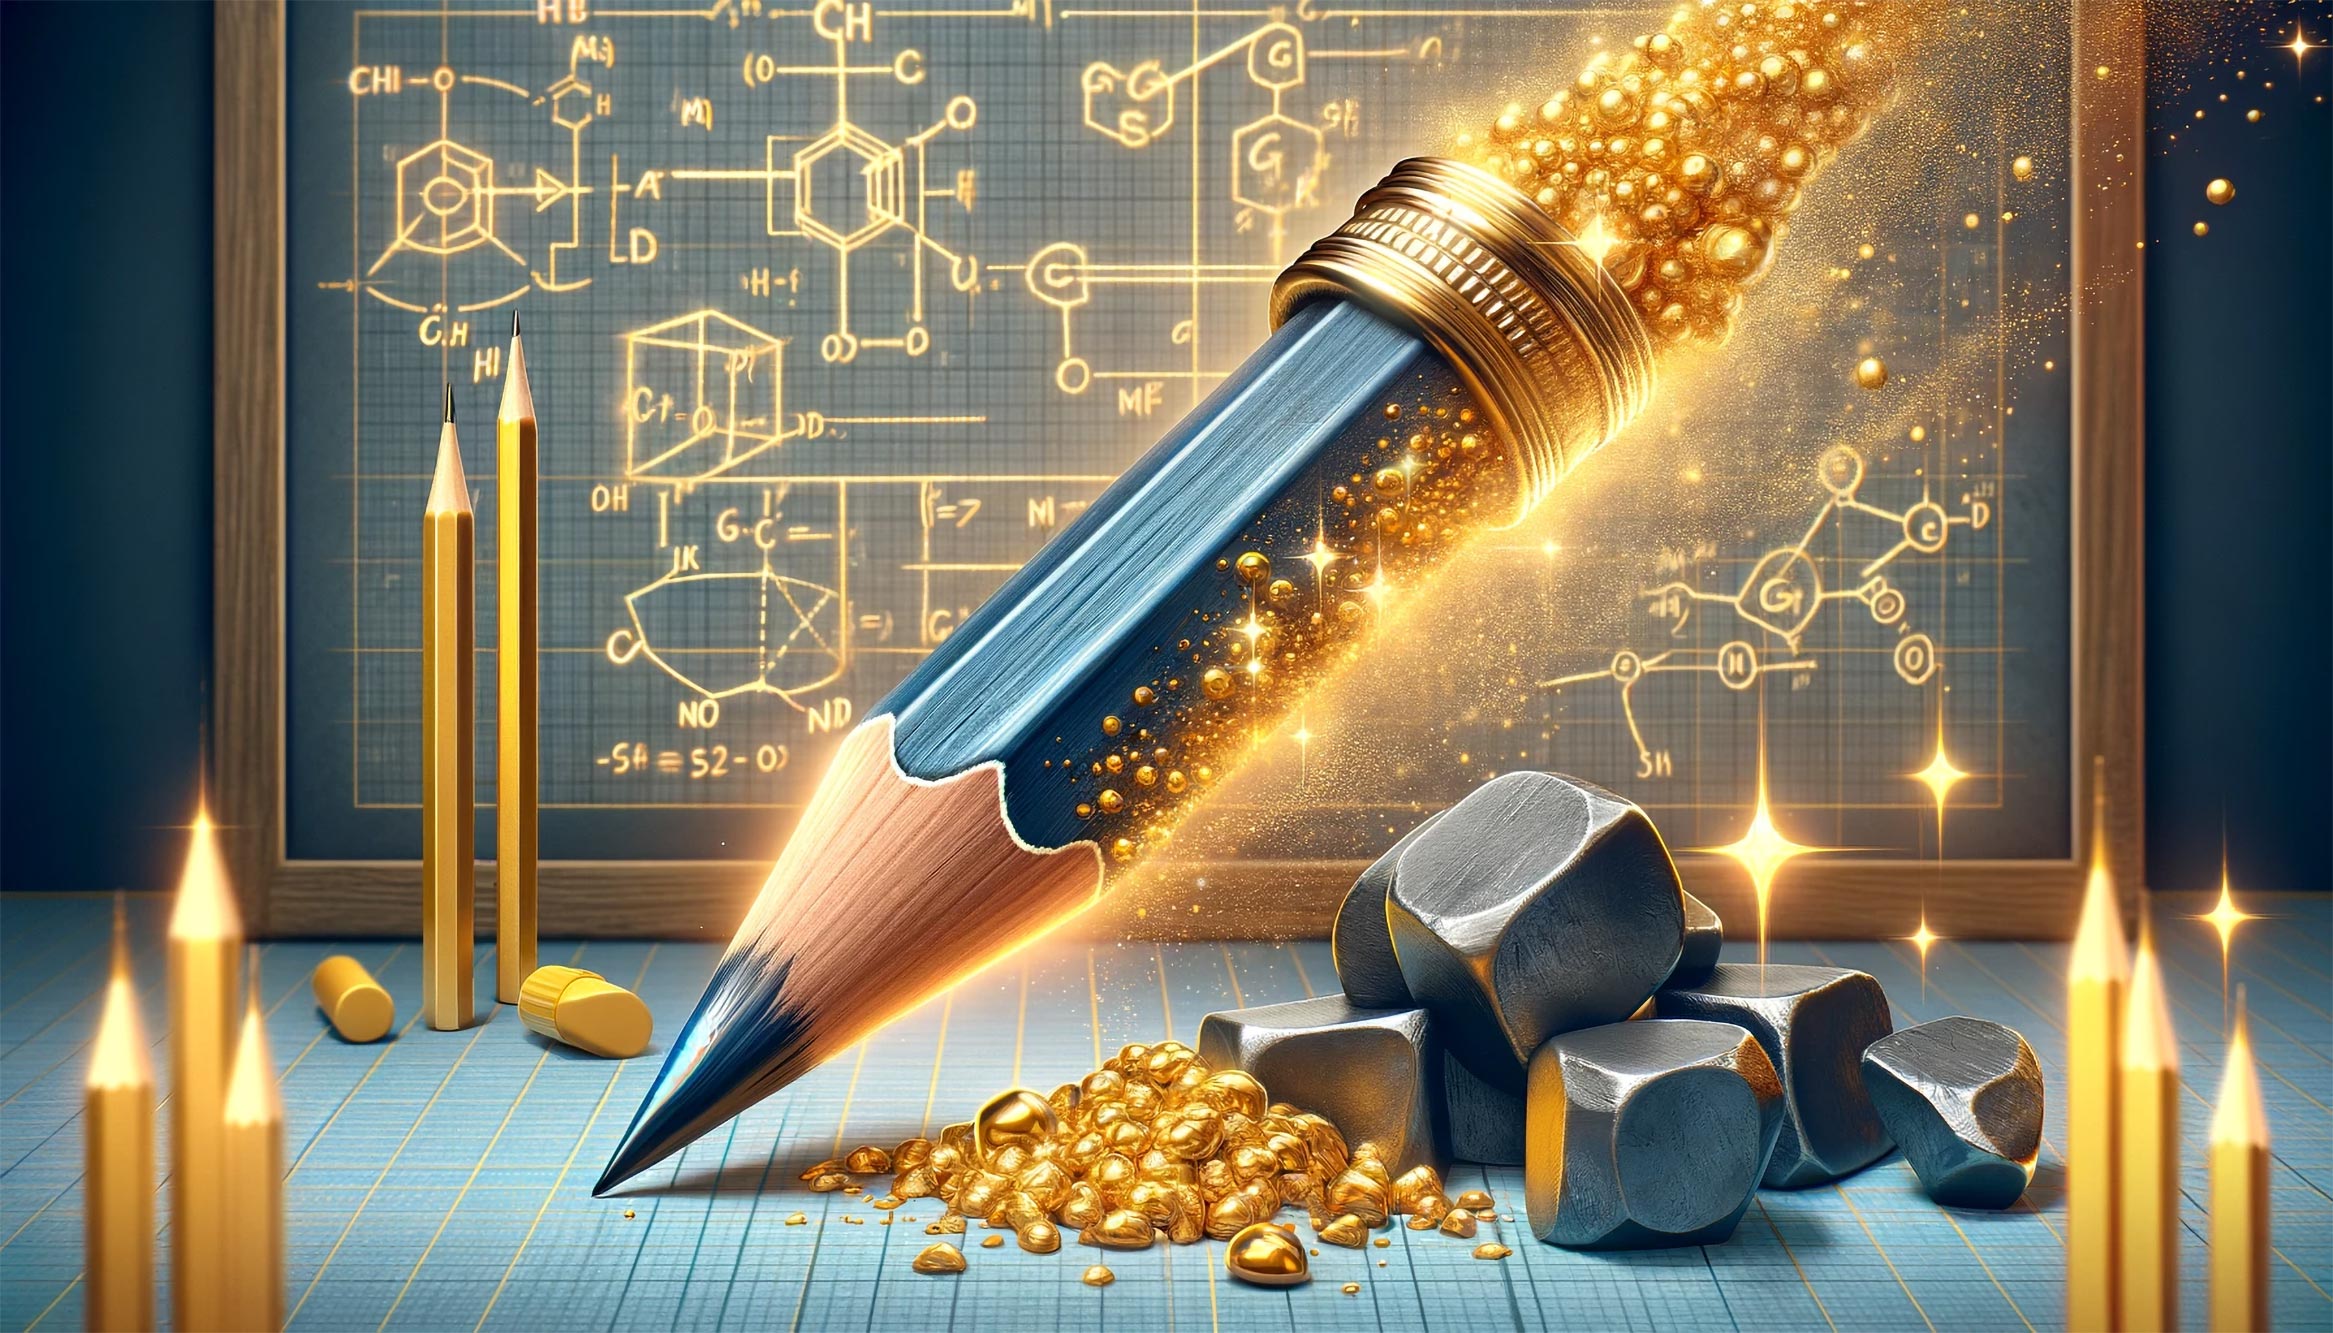 فيزيائيون من معهد ماساتشوستس للتكنولوجيا يحولون قلم الرصاص إلى “ذهب” إلكتروني